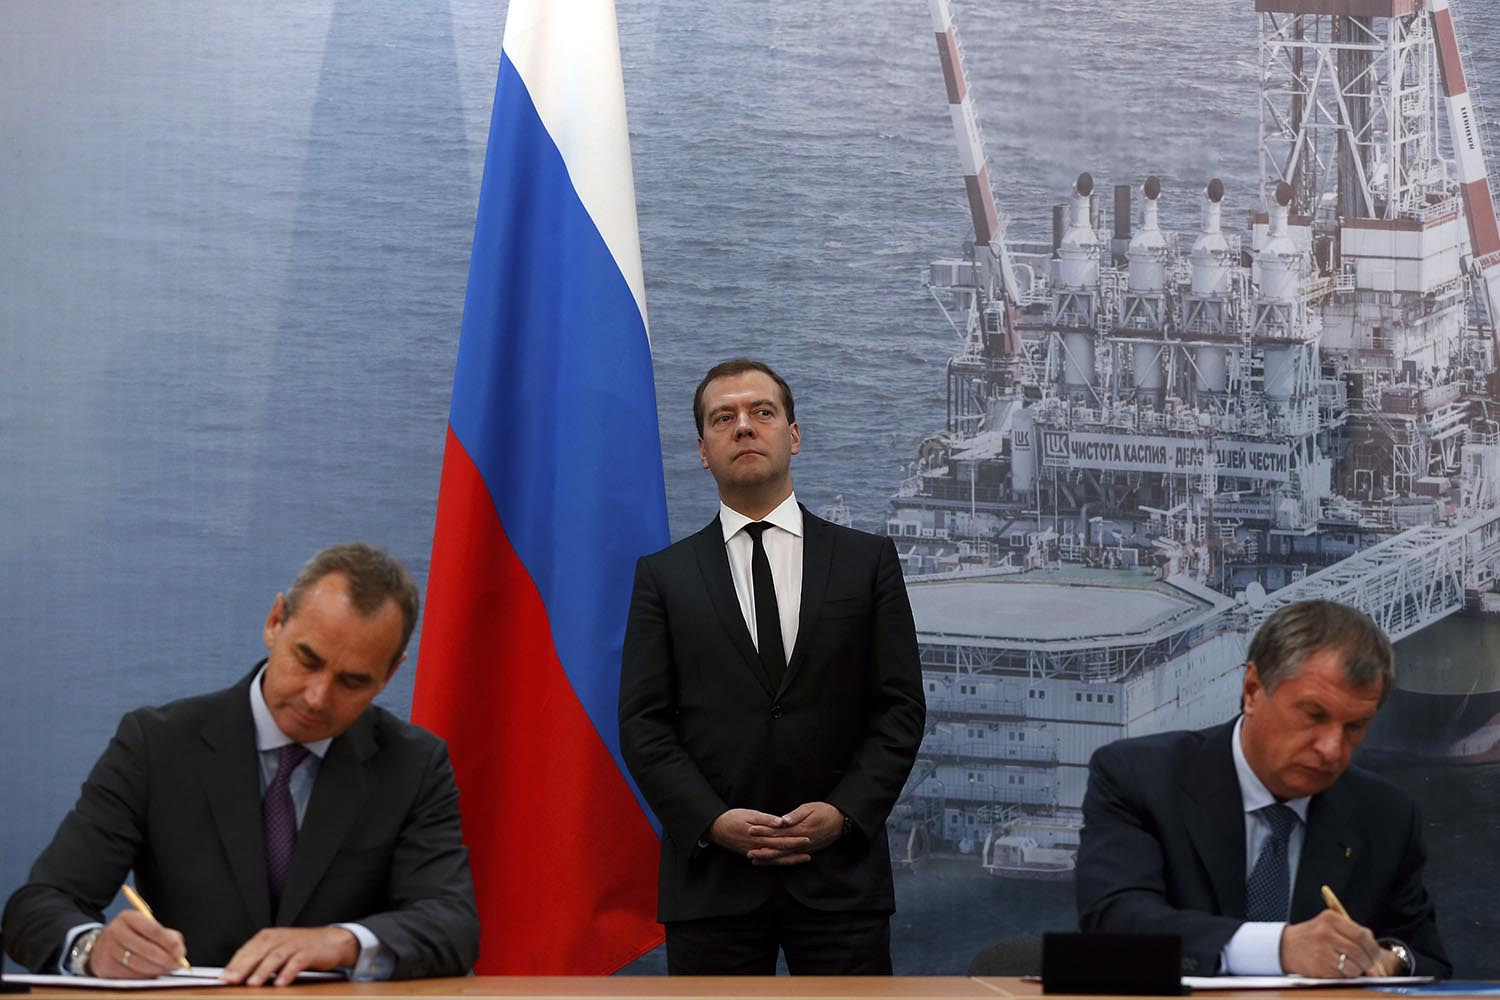 La petrolera estatal rusa Rosneft y la sueca Lundin Petroleum compran el 51% de PetroResurs LLC